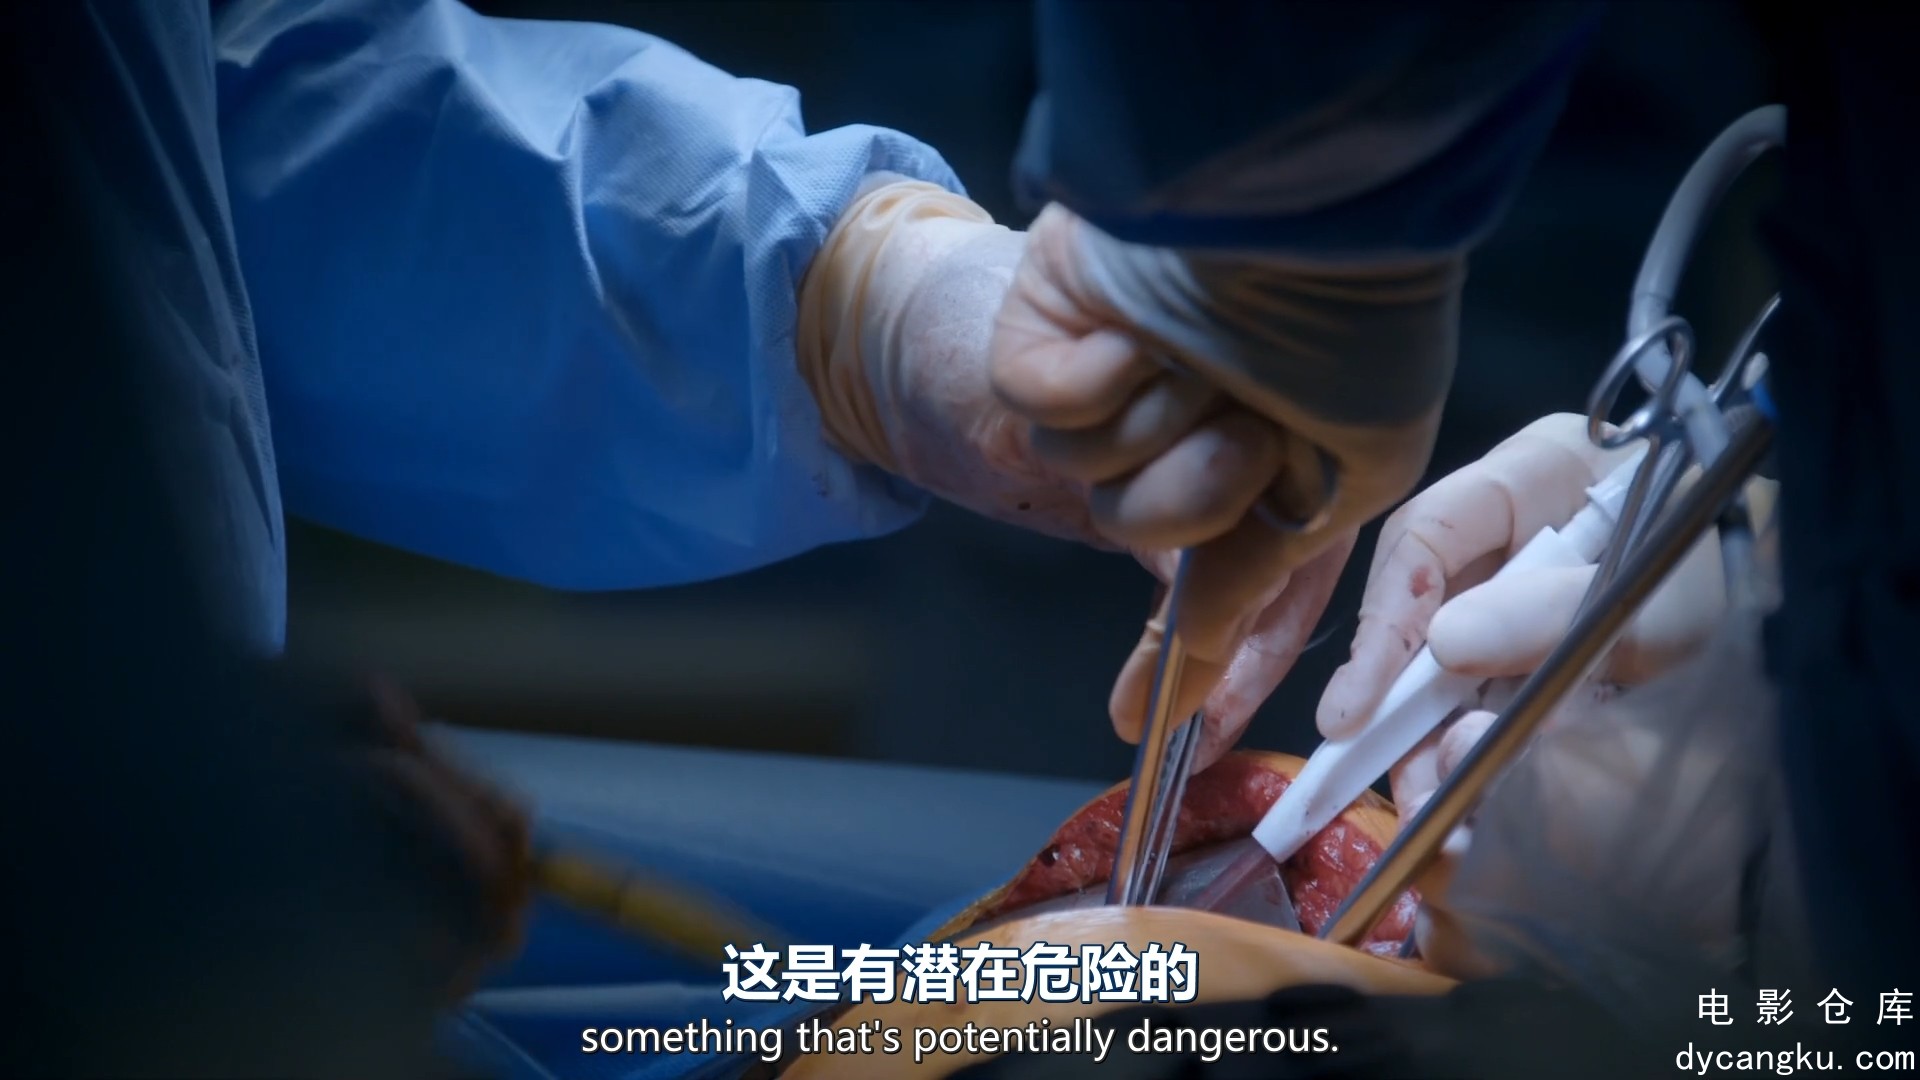 [电影仓库dycangku.com]手术室的故事Surgeons.At.the.Edge.of.Life.S04E03.1080p.mp4_.jpg